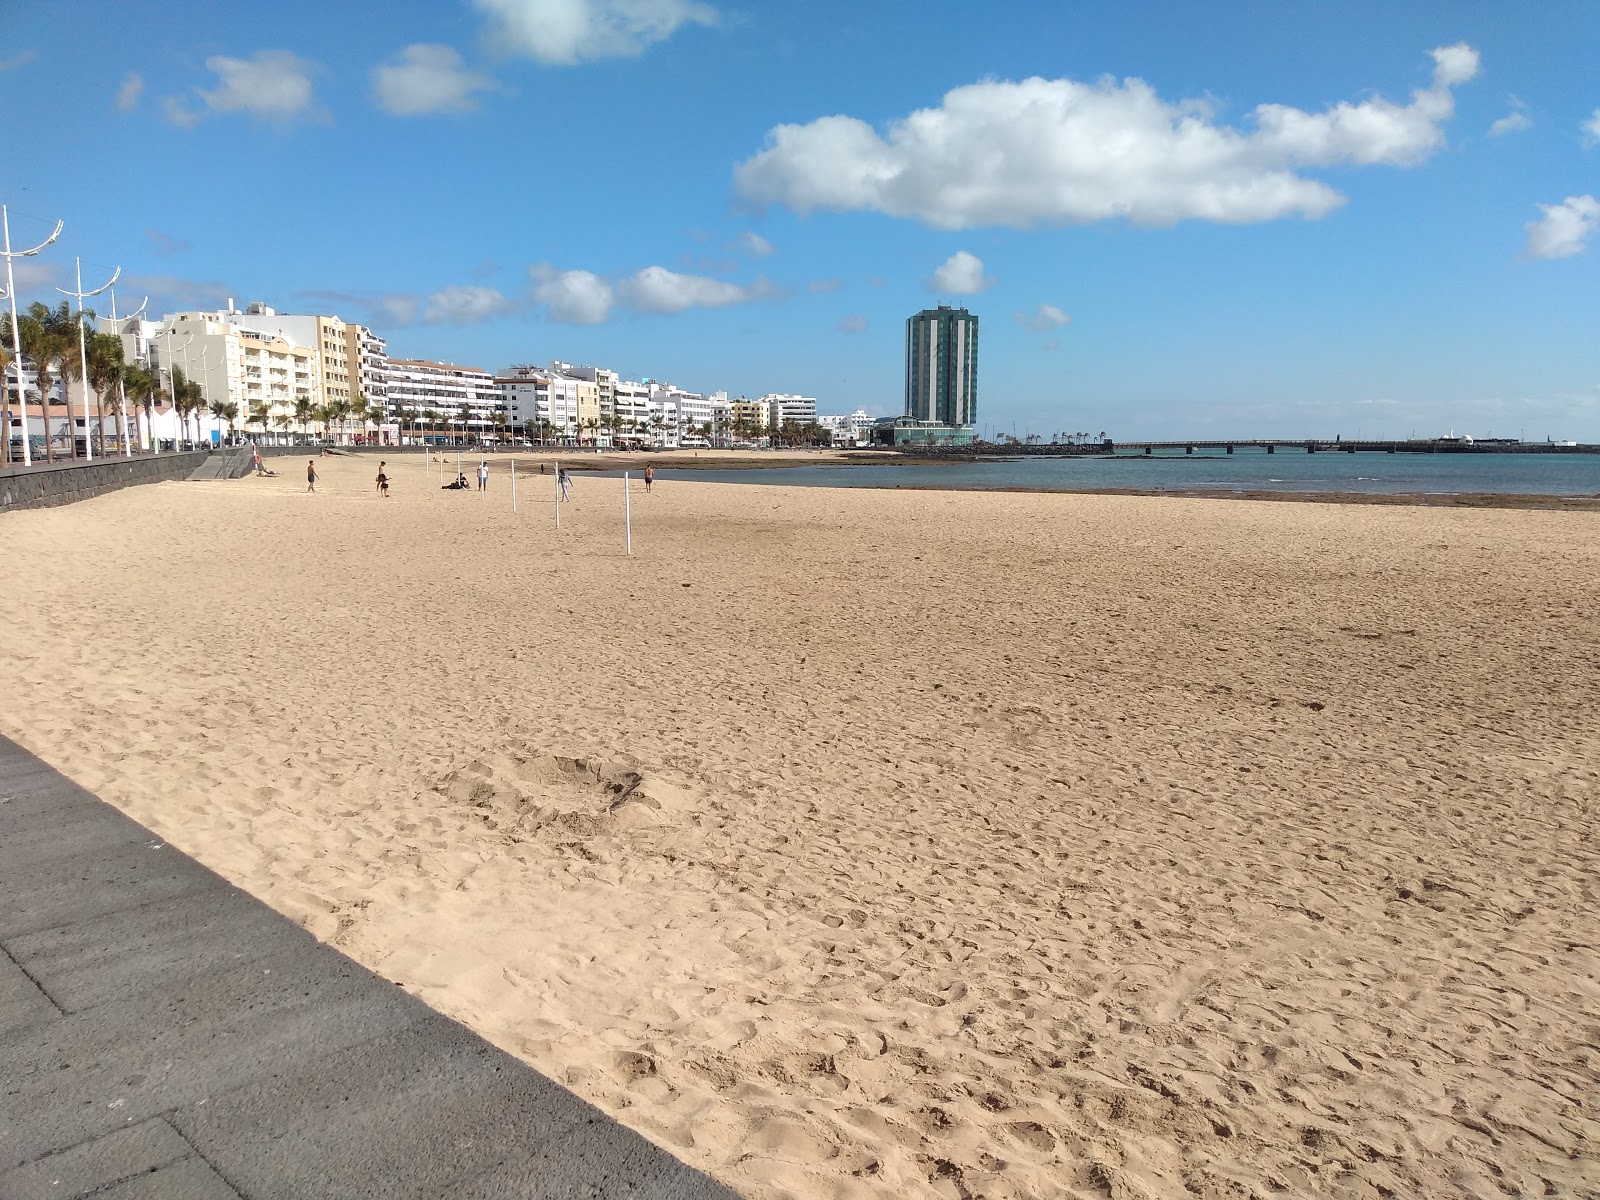 Reducto Plajı'in fotoğrafı çok temiz temizlik seviyesi ile